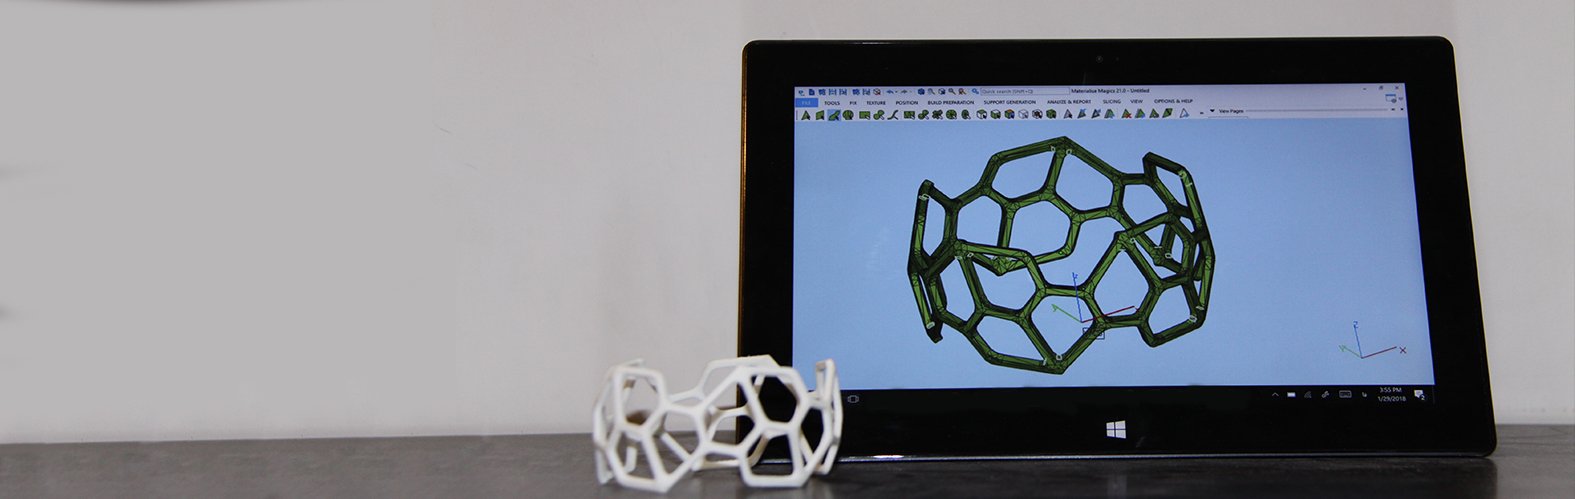 3D SLS printer software